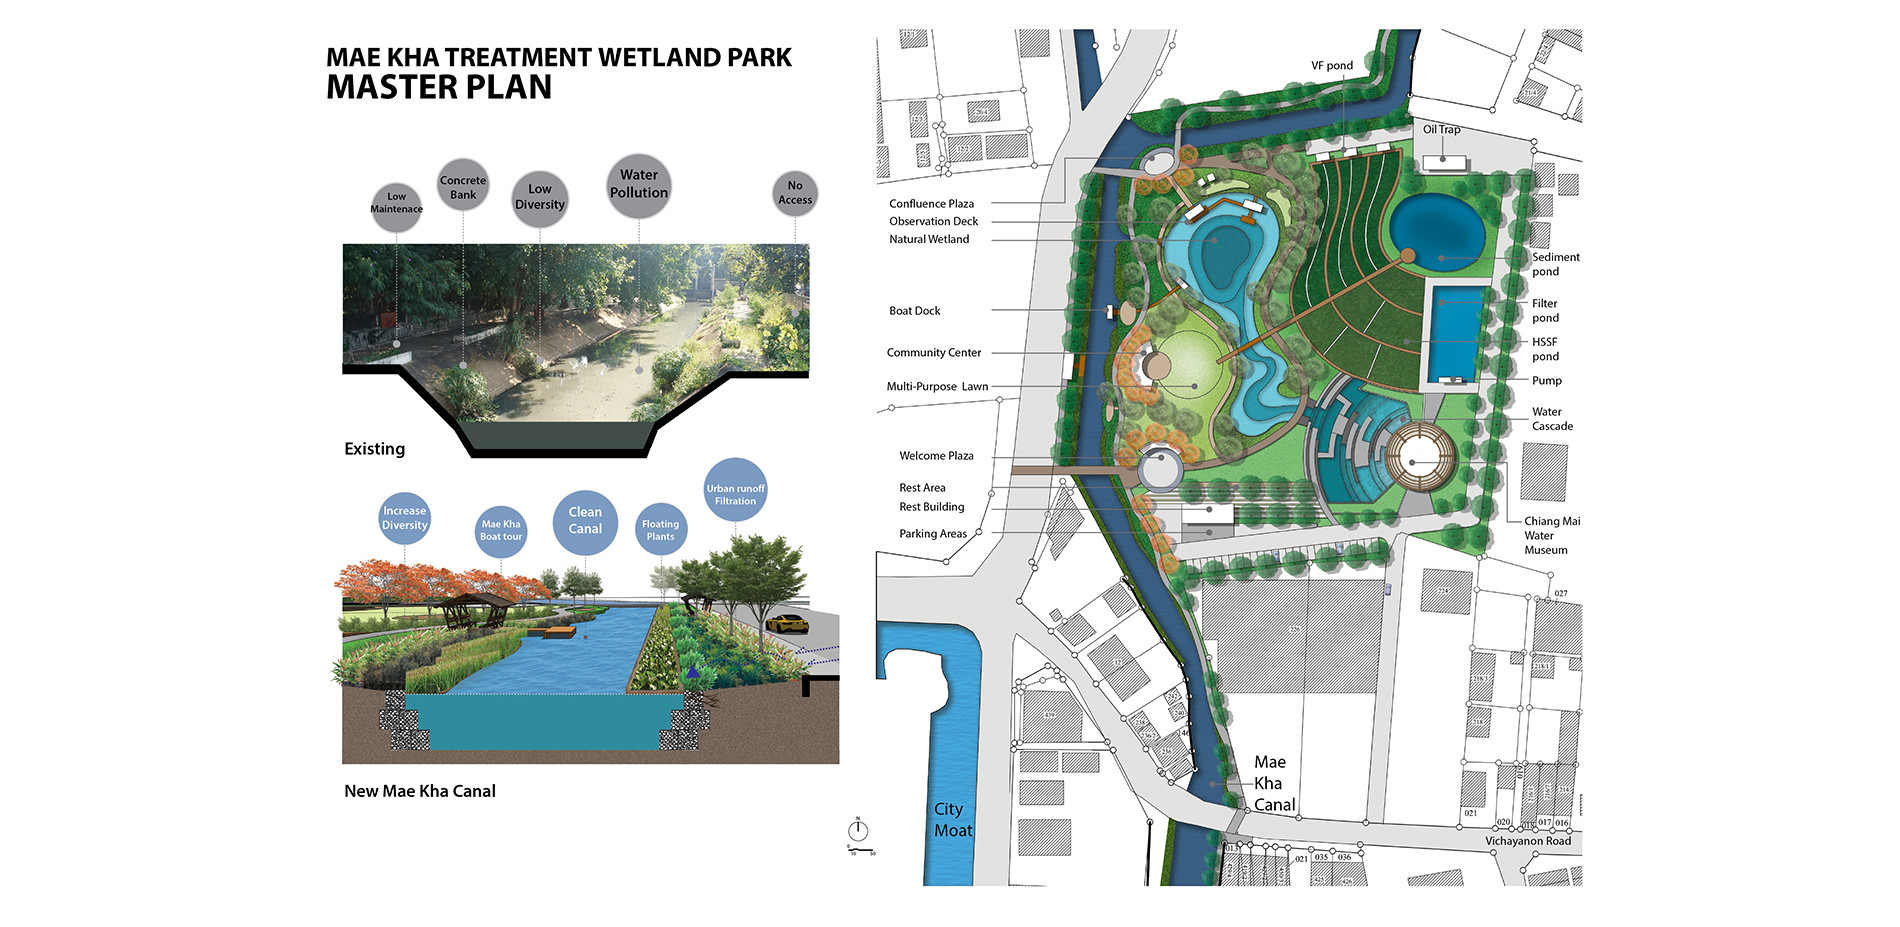 Mae Kha treatment wetland park master plan